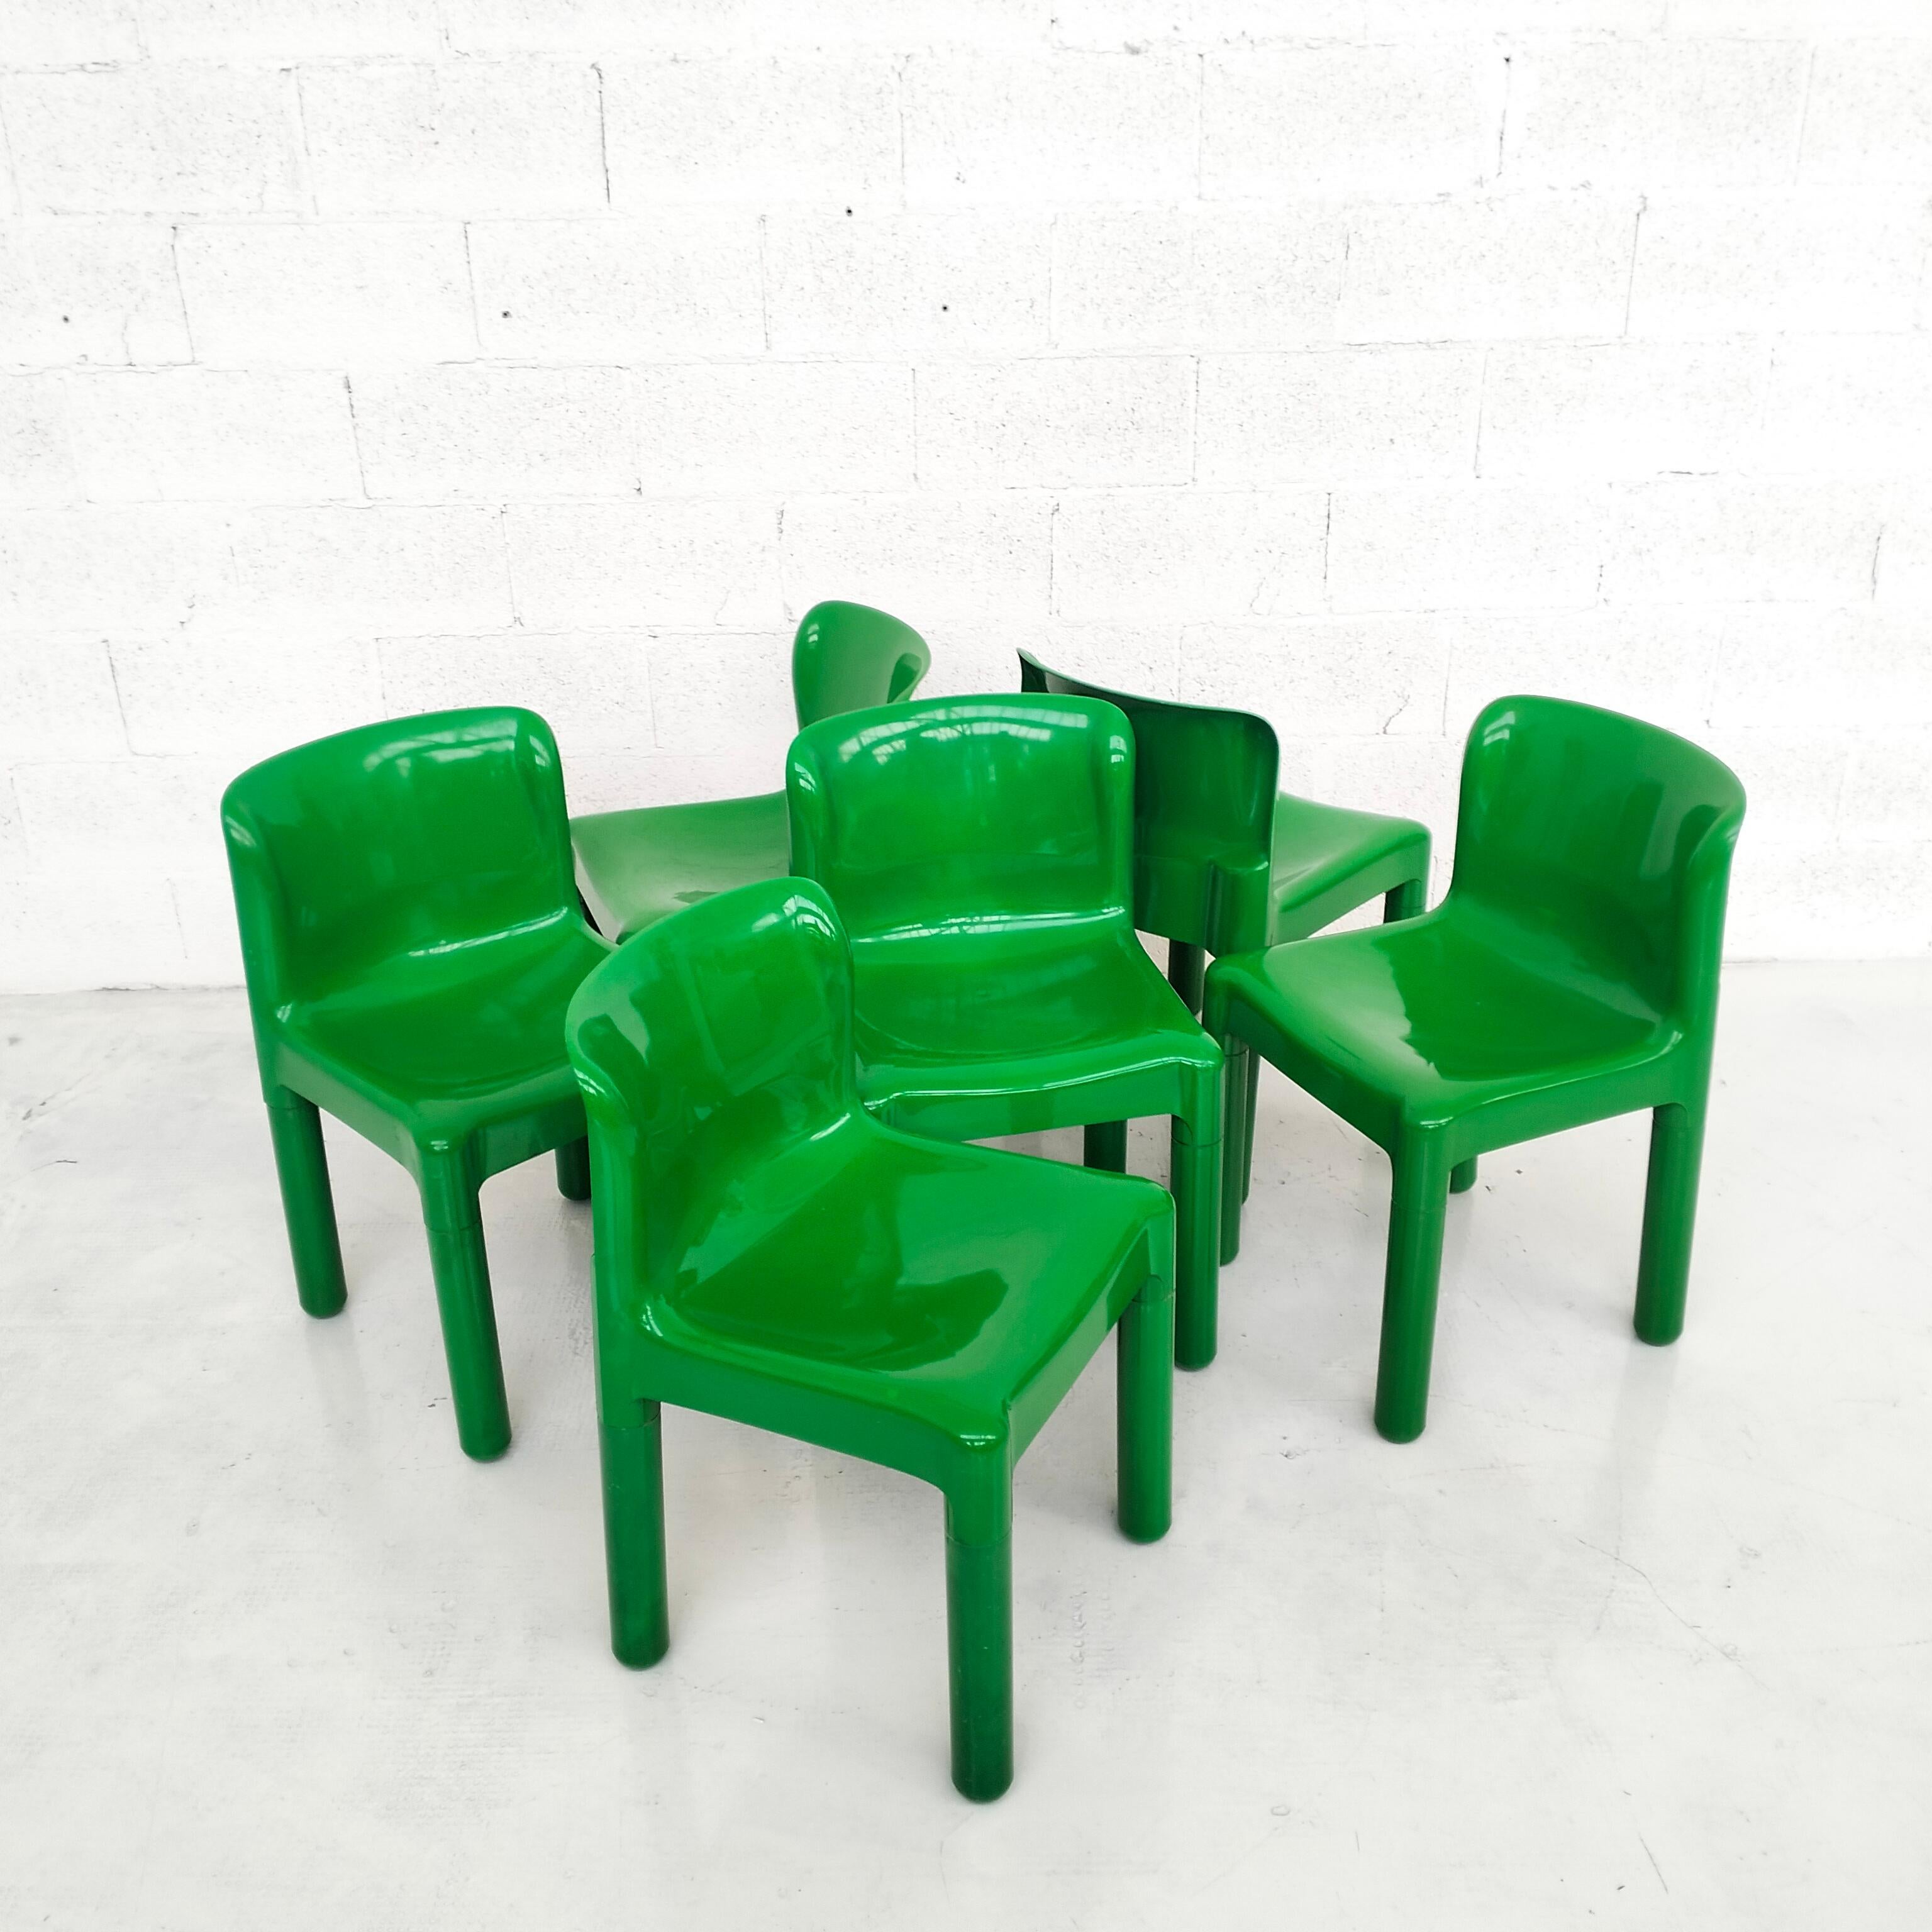 Hervorragender und seltener Satz von 6 grünen Kunststoffstühlen Modell 4875, entworfen von Carlo Bartoli und hergestellt von Kartell 1970er Jahre. 
In gutem Zustand, alters- und gebrauchsbedingte Abnutzung.
Abmessungen: L 44 cm - T 42 - H 74/43.